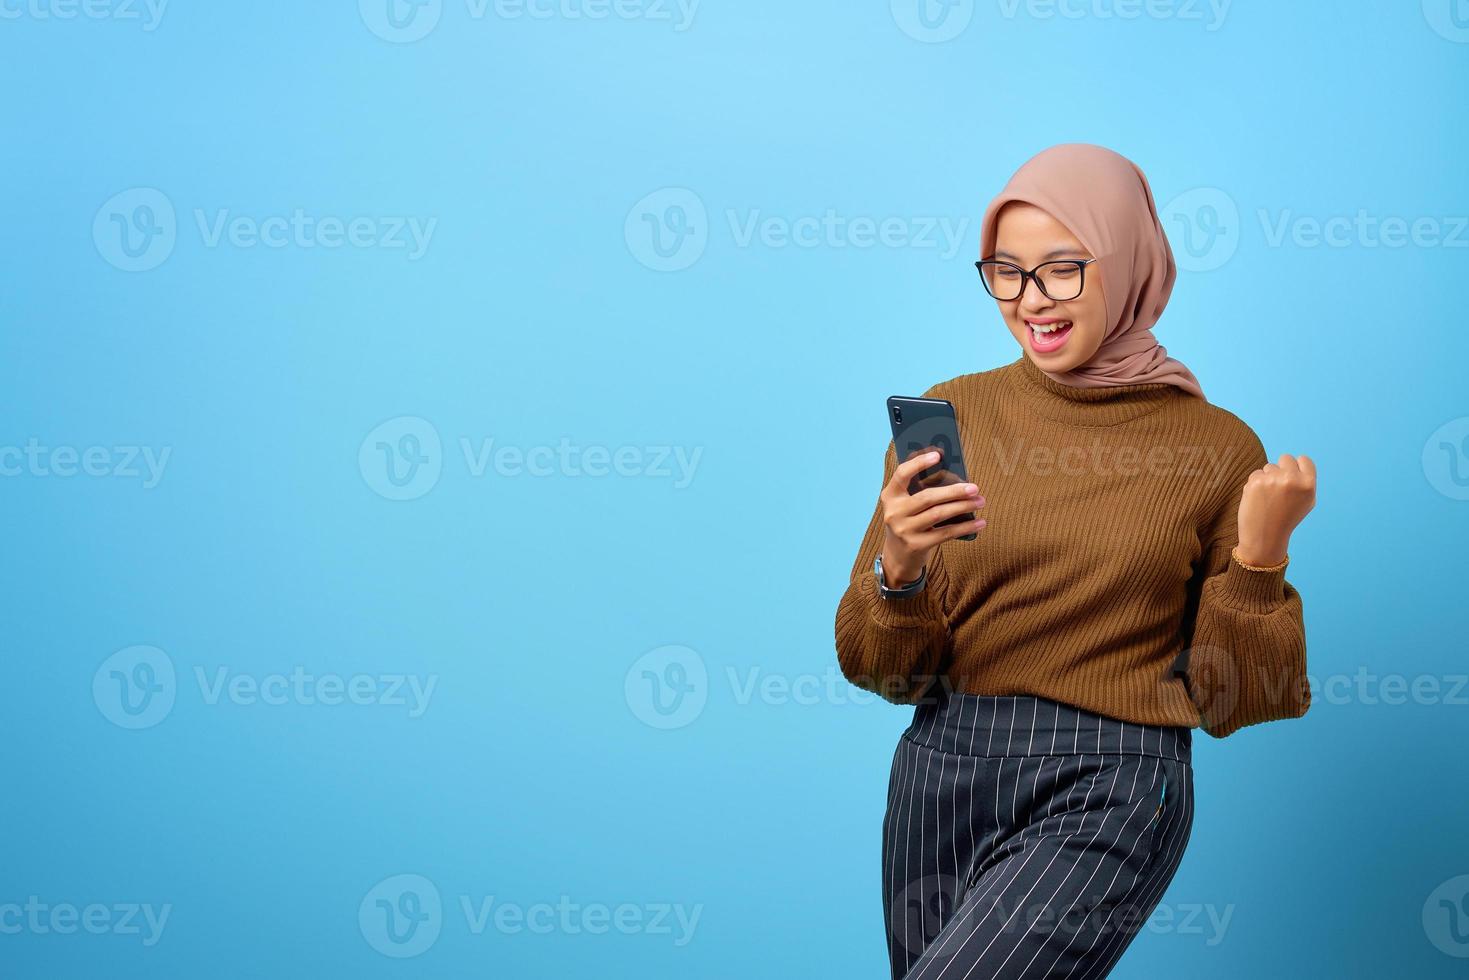 felice giovane donna asiatica che utilizza il telefono cellulare con successo del gesto della mano su sfondo blu foto